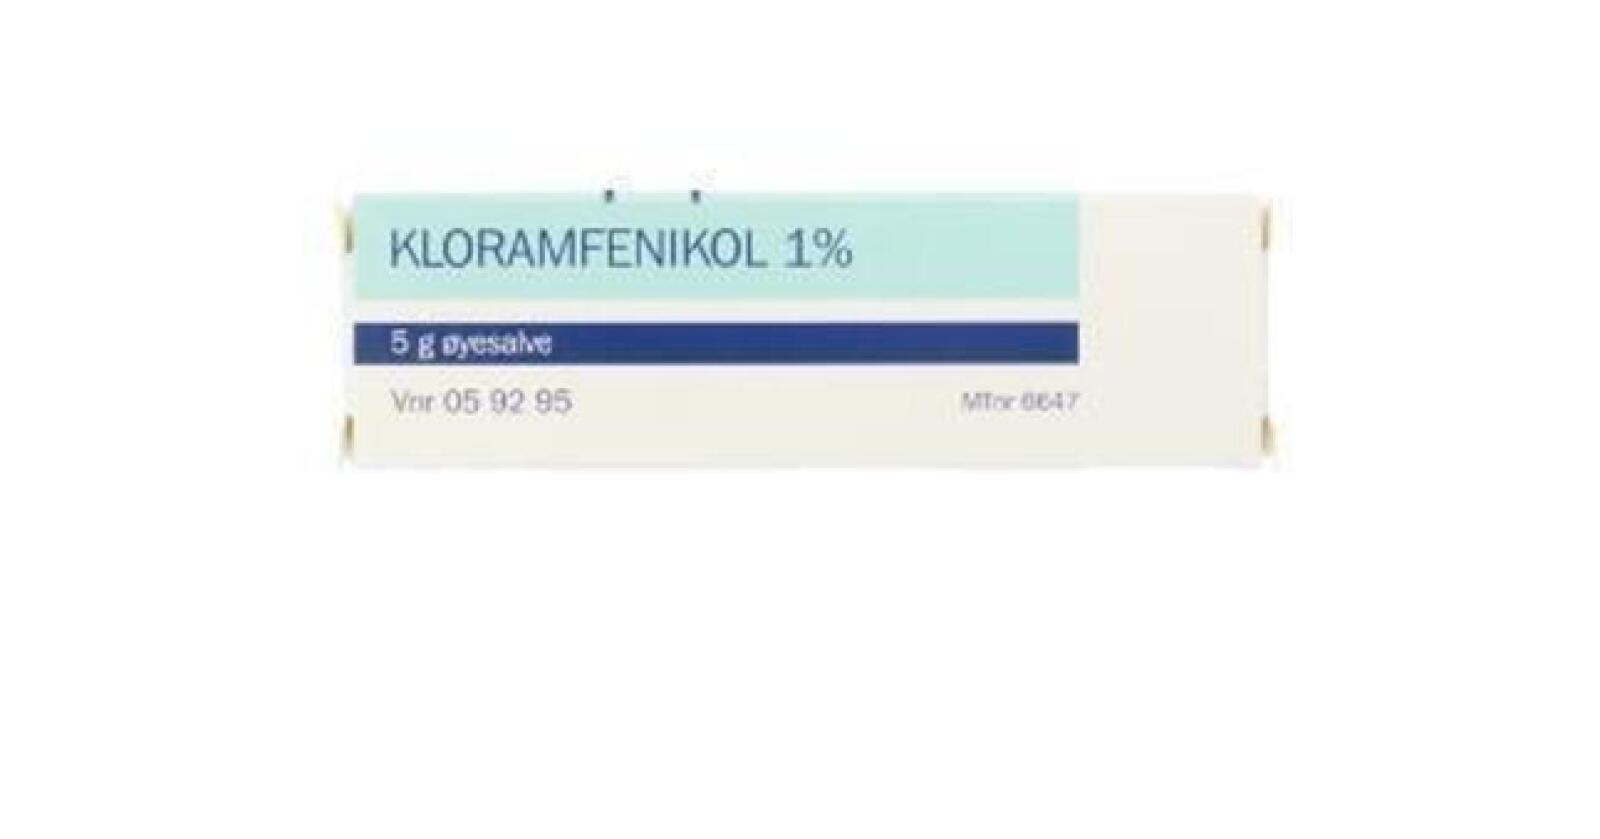 Øye-infeksjoner: Kloramfenikol er et bakteriostatisk antibiotikum som vesentlig brukes til lokalbehandling ved øye-infeksjoner. Brukt på riktig måte til kjæledyr og mennesker er kloramfenikol lovlig. Det er imidlertid forbudt til matproduserende dyr i Norge og EU fordi trygge restnivåer ikke kan settes. (Illustrasjonsfoto: Apotek 1)